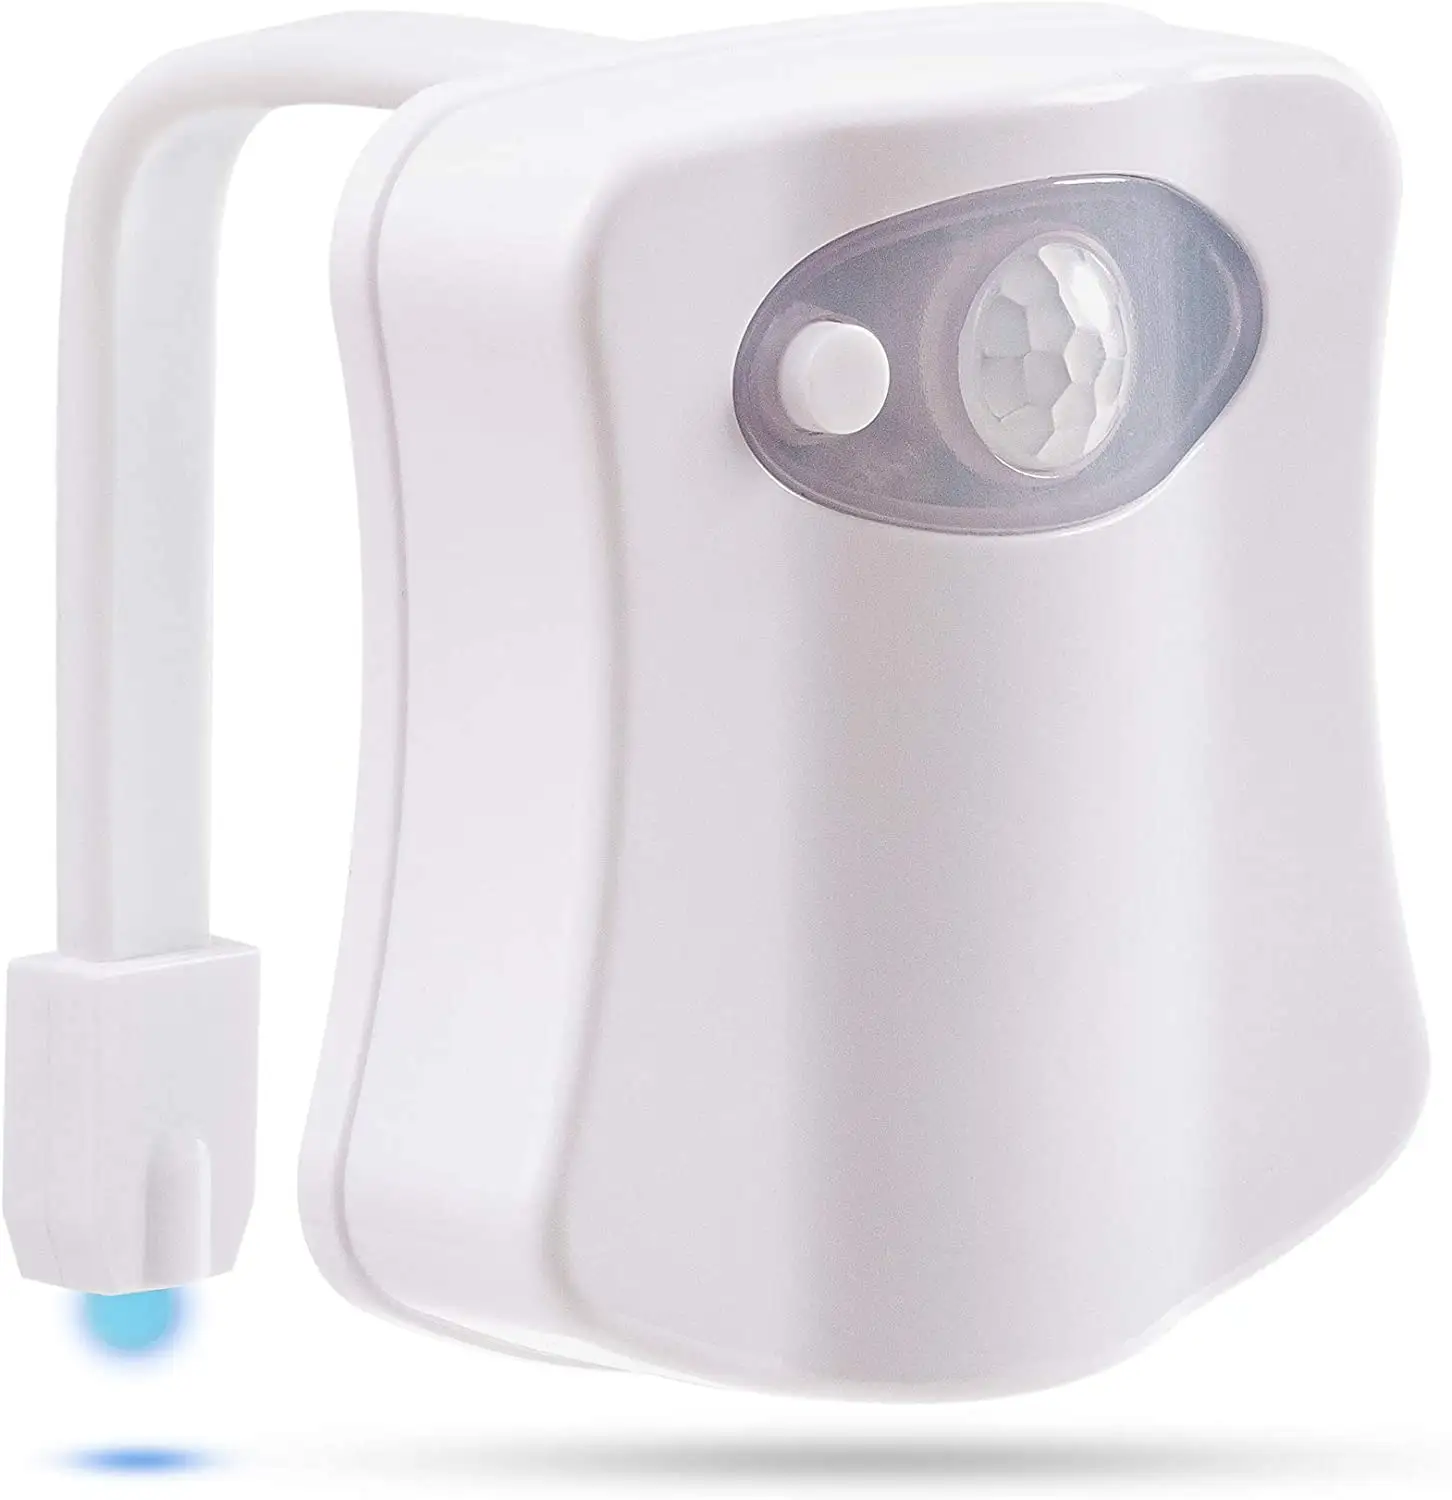 Lampu Toilet LED Tahan Air, Lampu Malam Sensor Gerak 8 Warna, Lampu Tempat Duduk untuk Kamar Mandi Anak-anak, Toilet Aman